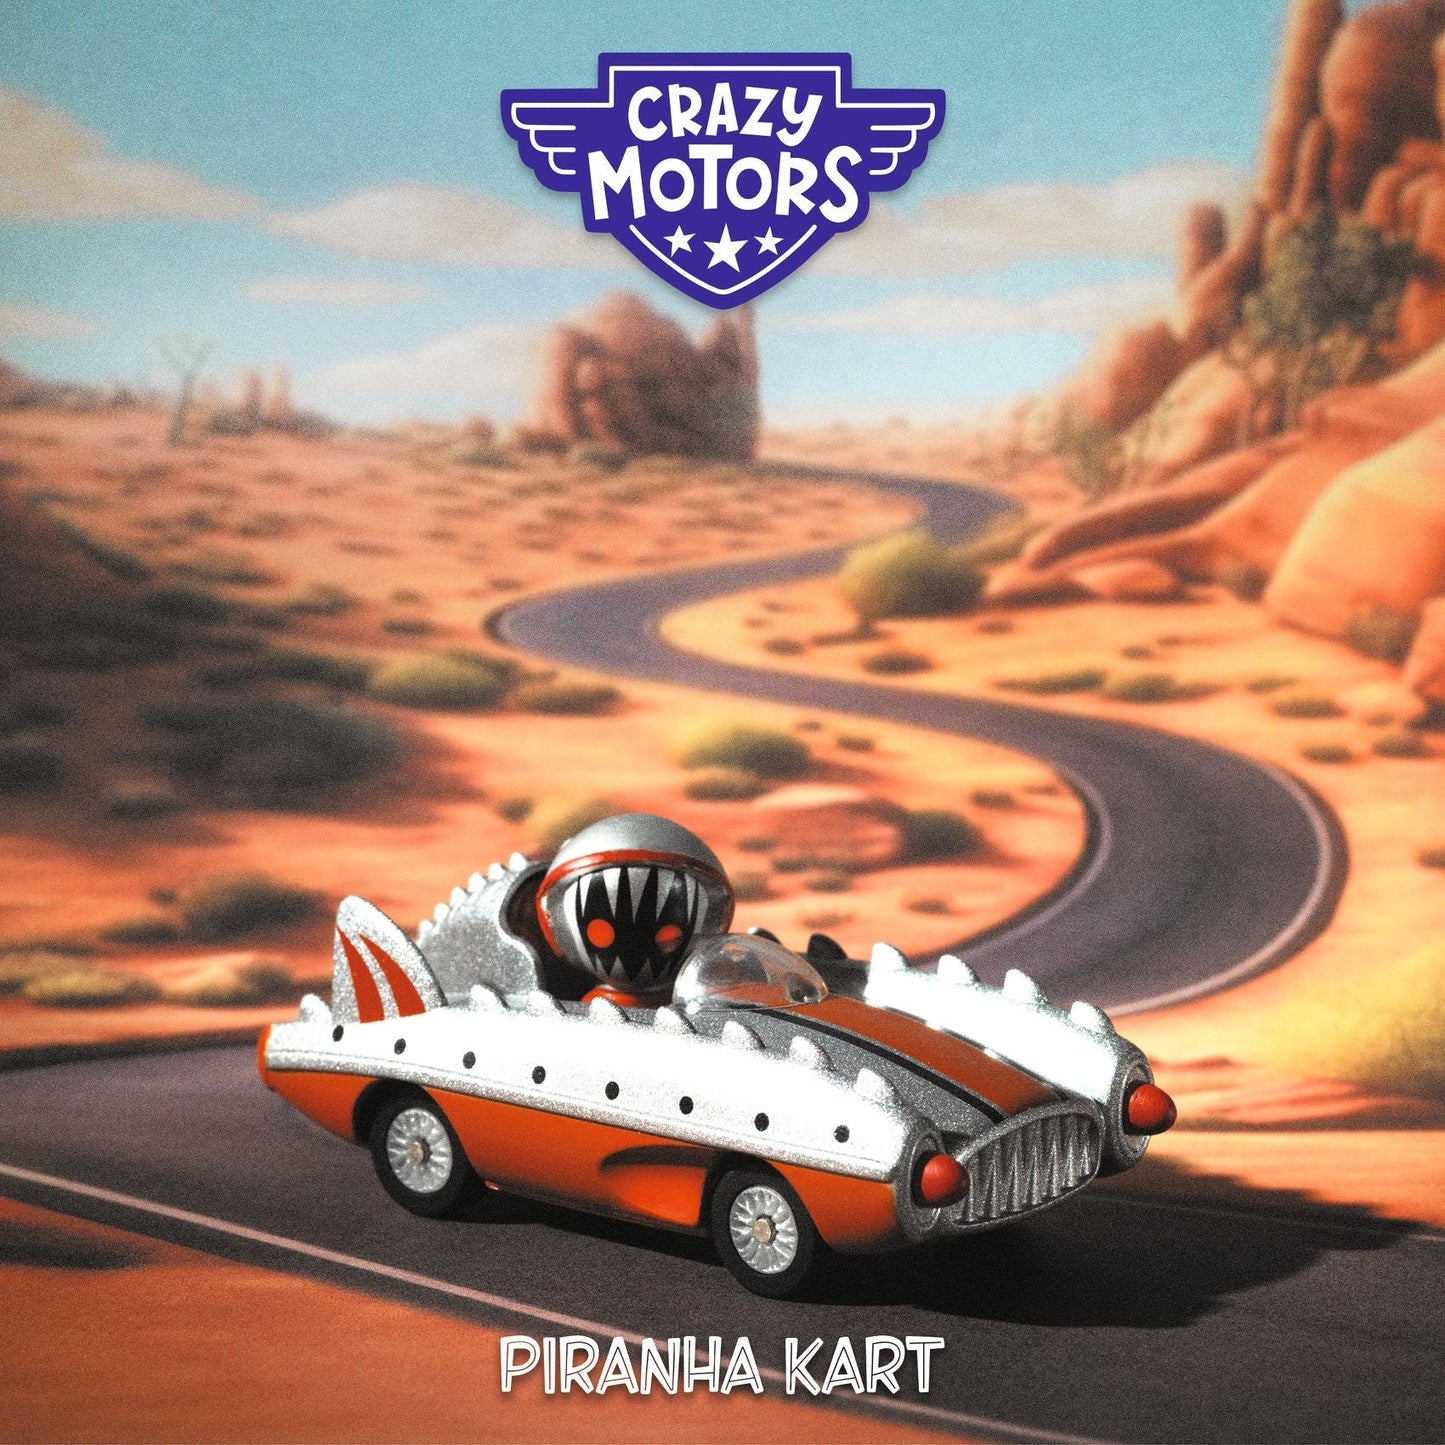 Piranha Kart Crazy Motors